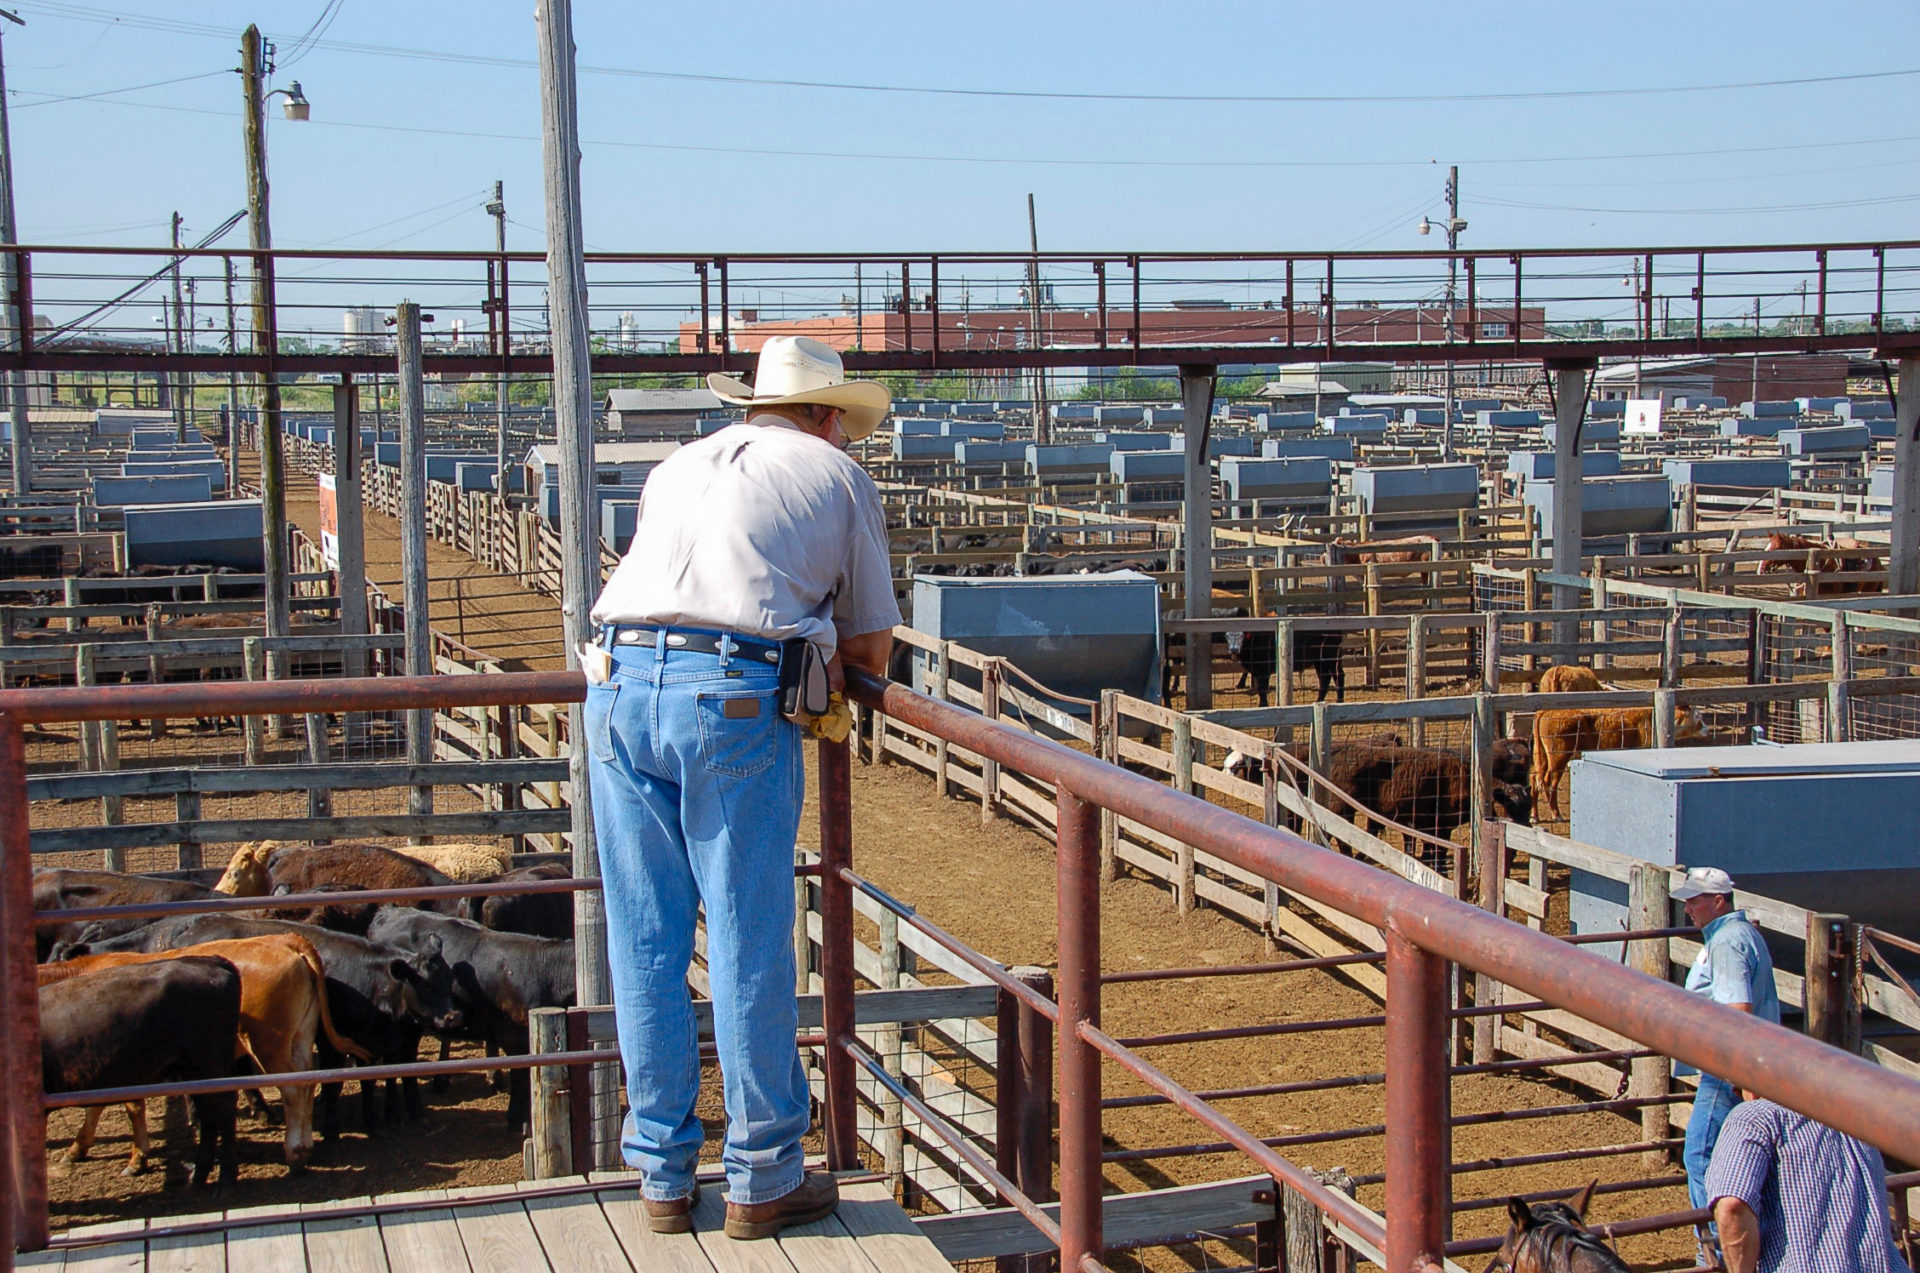 Cowboy blickt auf Stallungen am größten Umschlagplatz für Vieh in der Welt